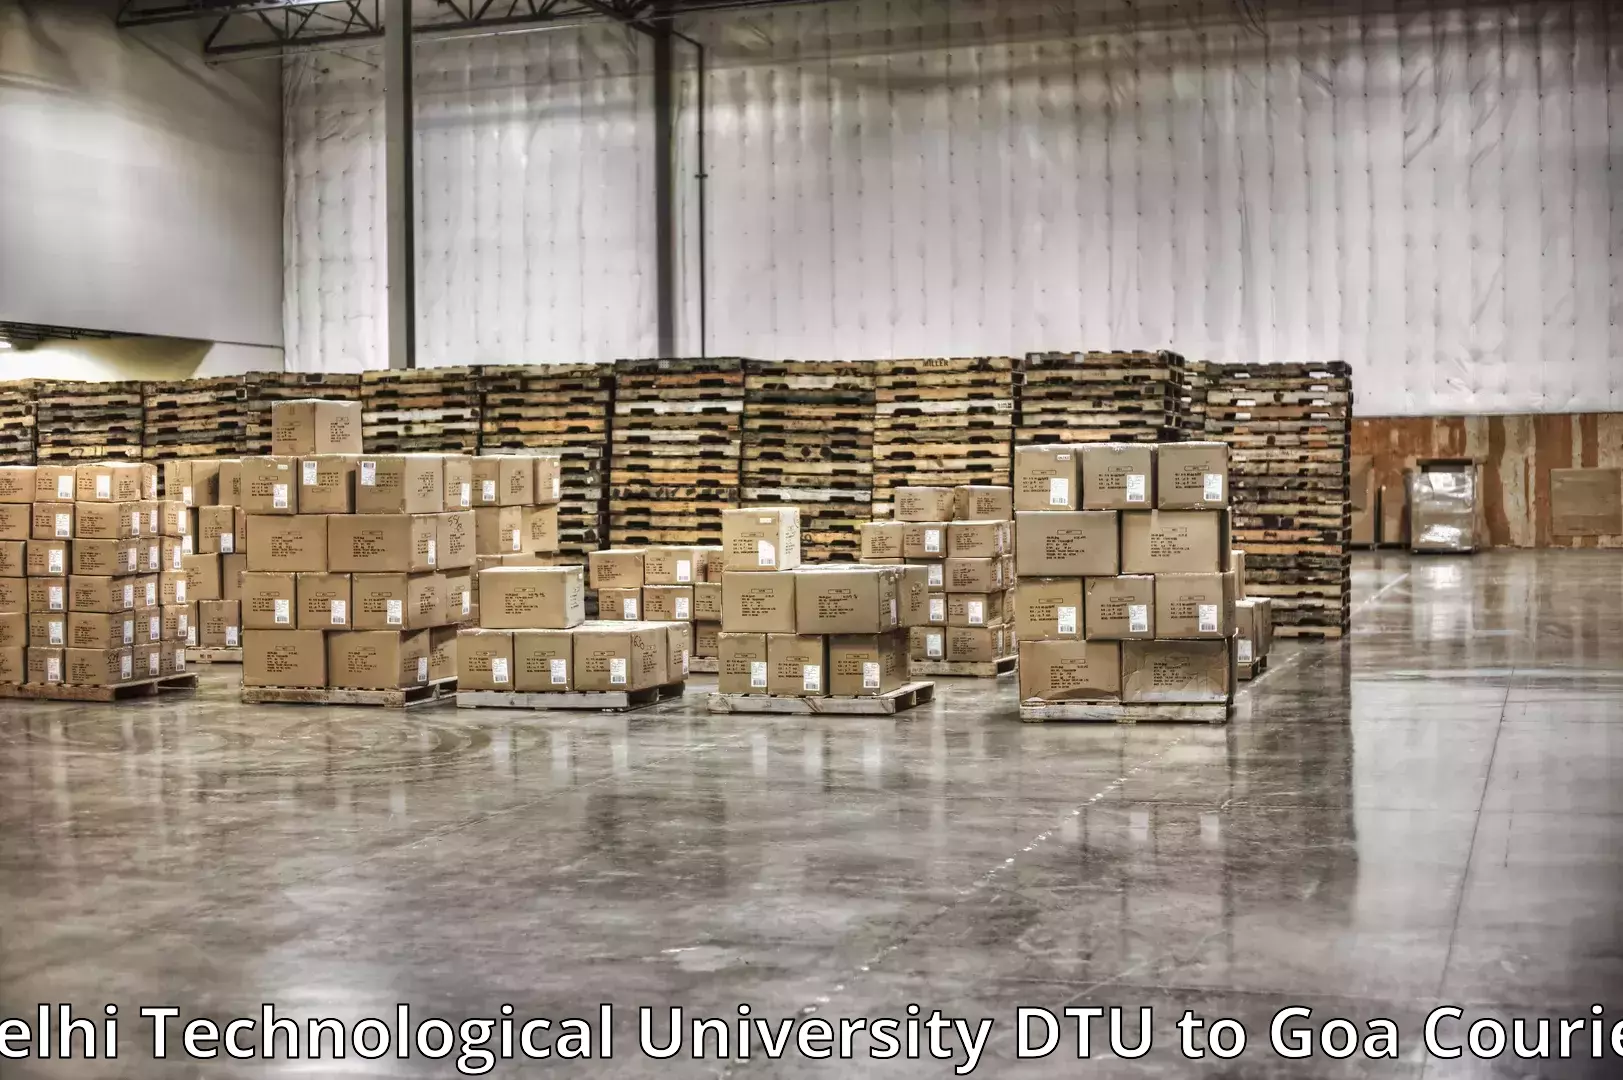 Furniture transport and storage Delhi Technological University DTU to Ponda